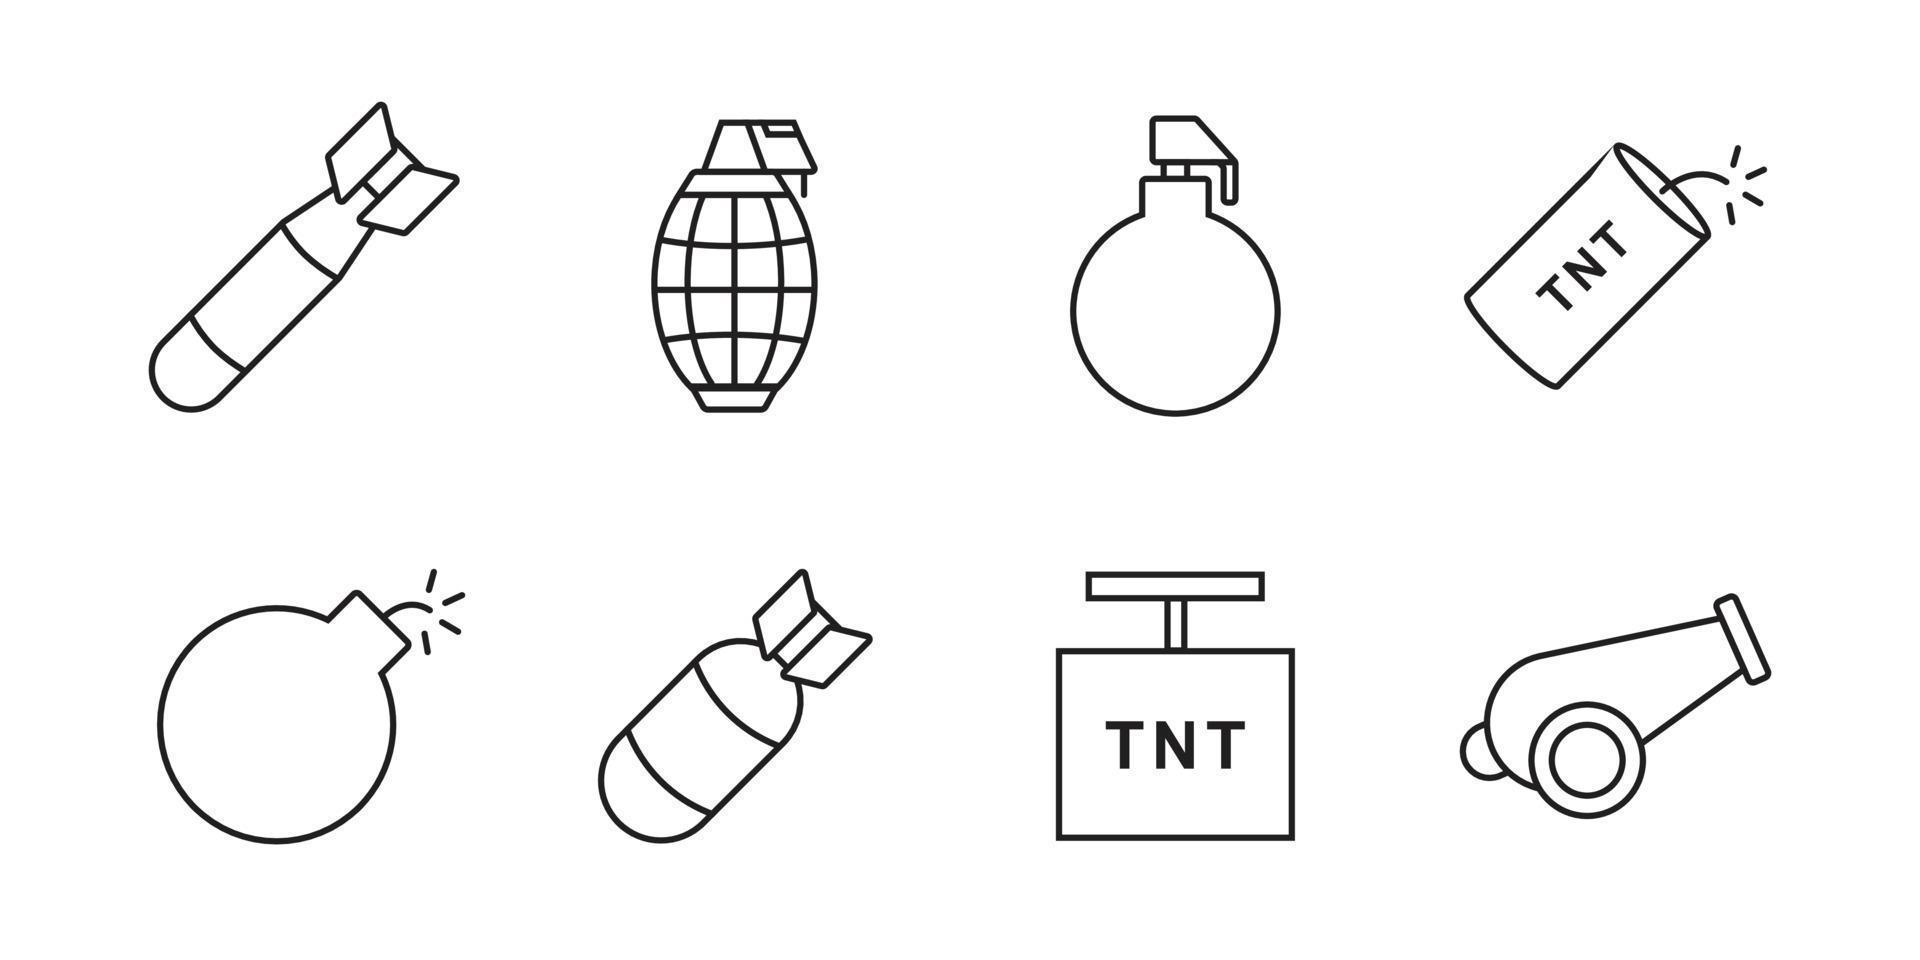 raccolta di icone esplosive. elemento di design di linea semplice bomba, granata e razzo vettore